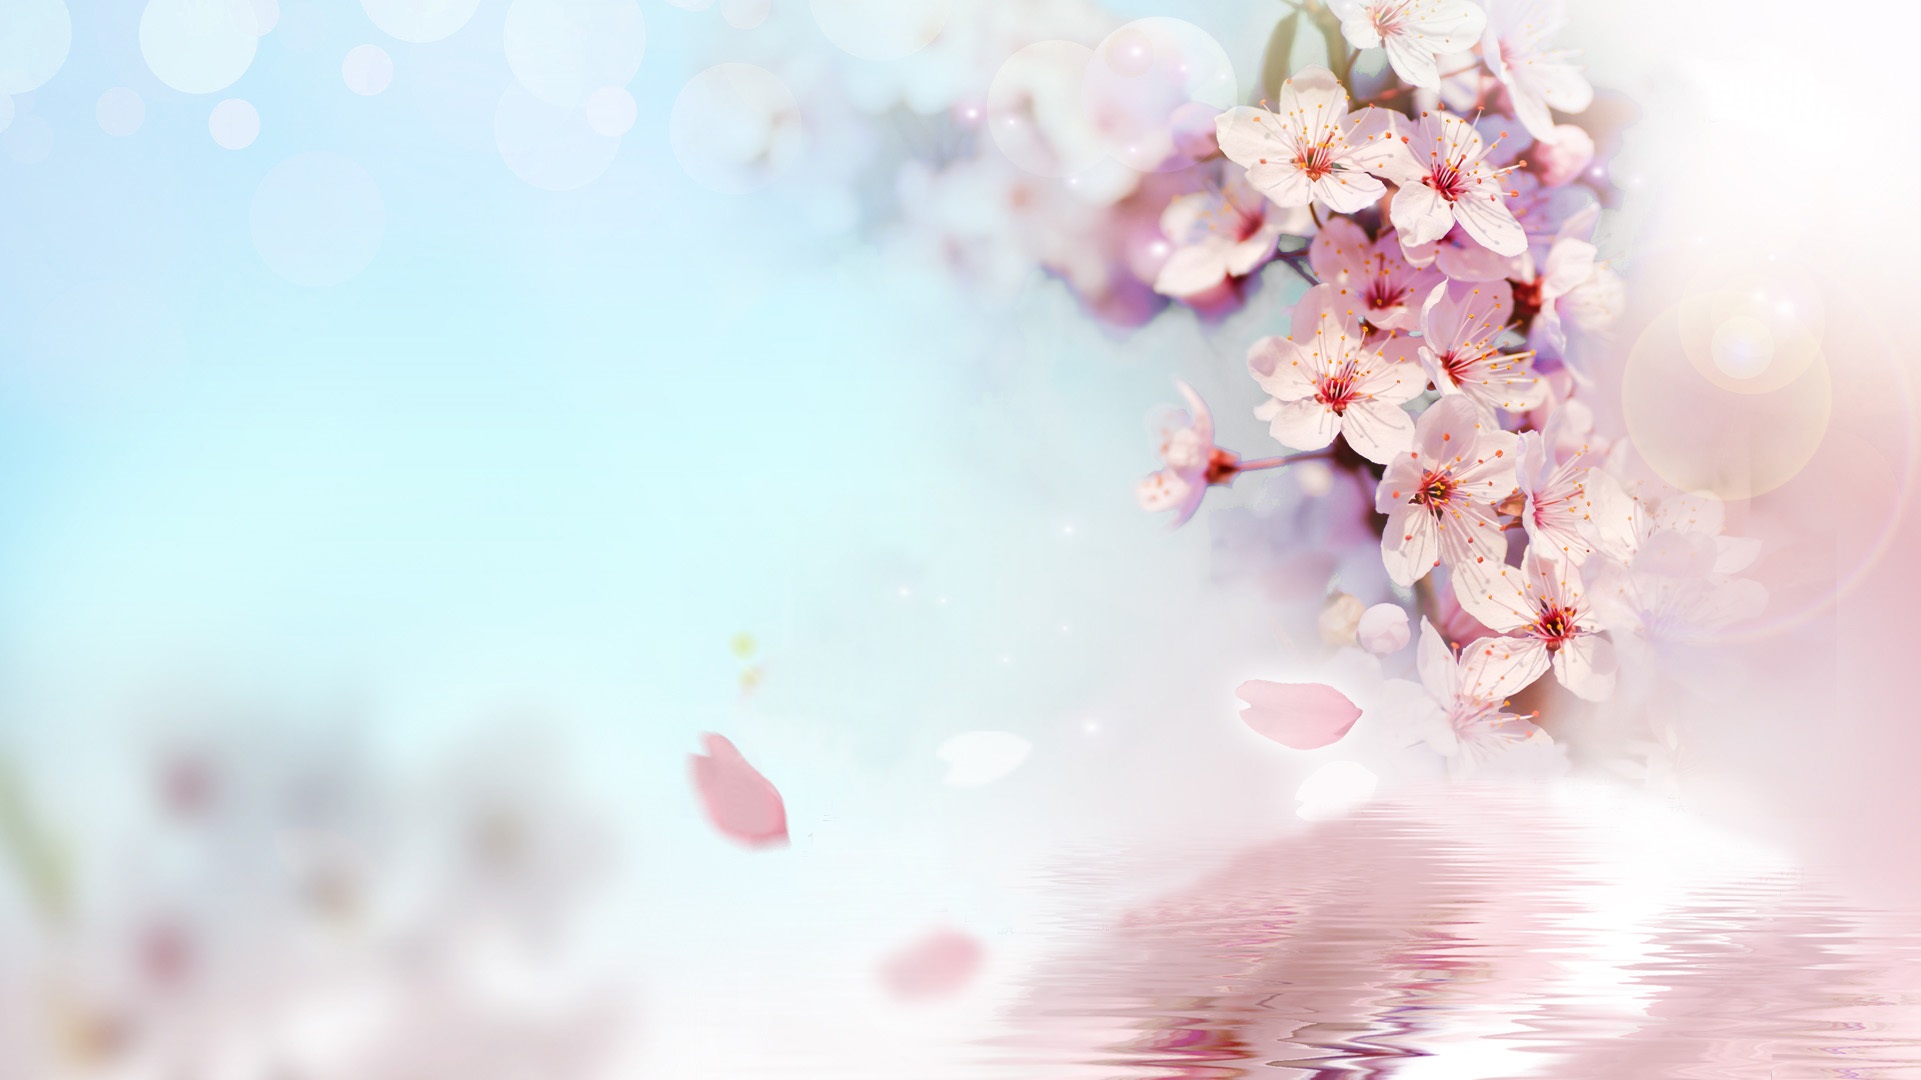 download gratuito di hd di sfondi floreali,fiorire,rosa,fiore,fiore di ciliegio,primavera